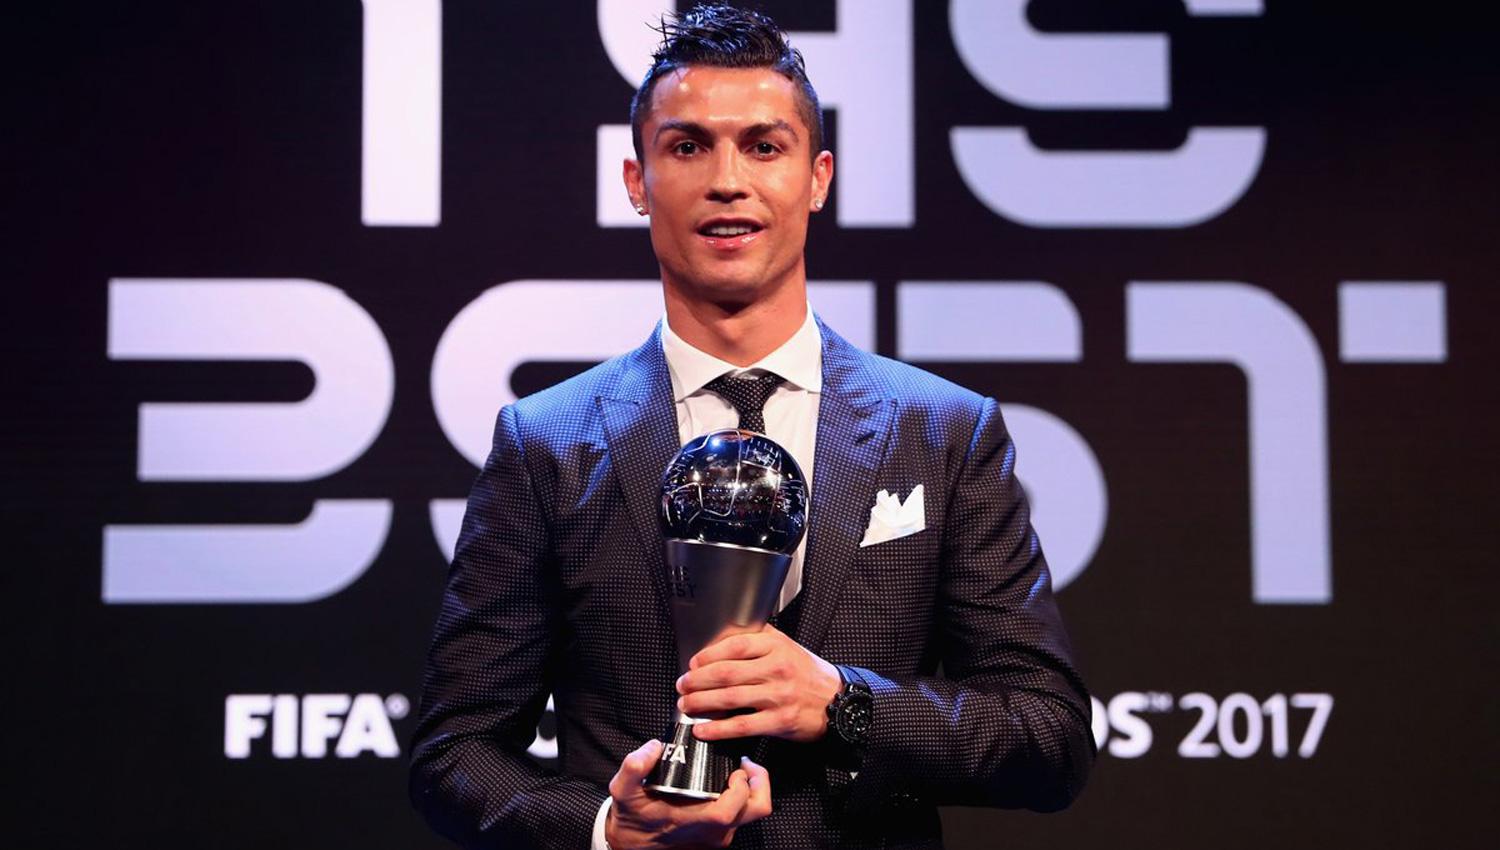 Cristiano Ronaldo ganó el premio "The Best" al mejor jugador del mundo